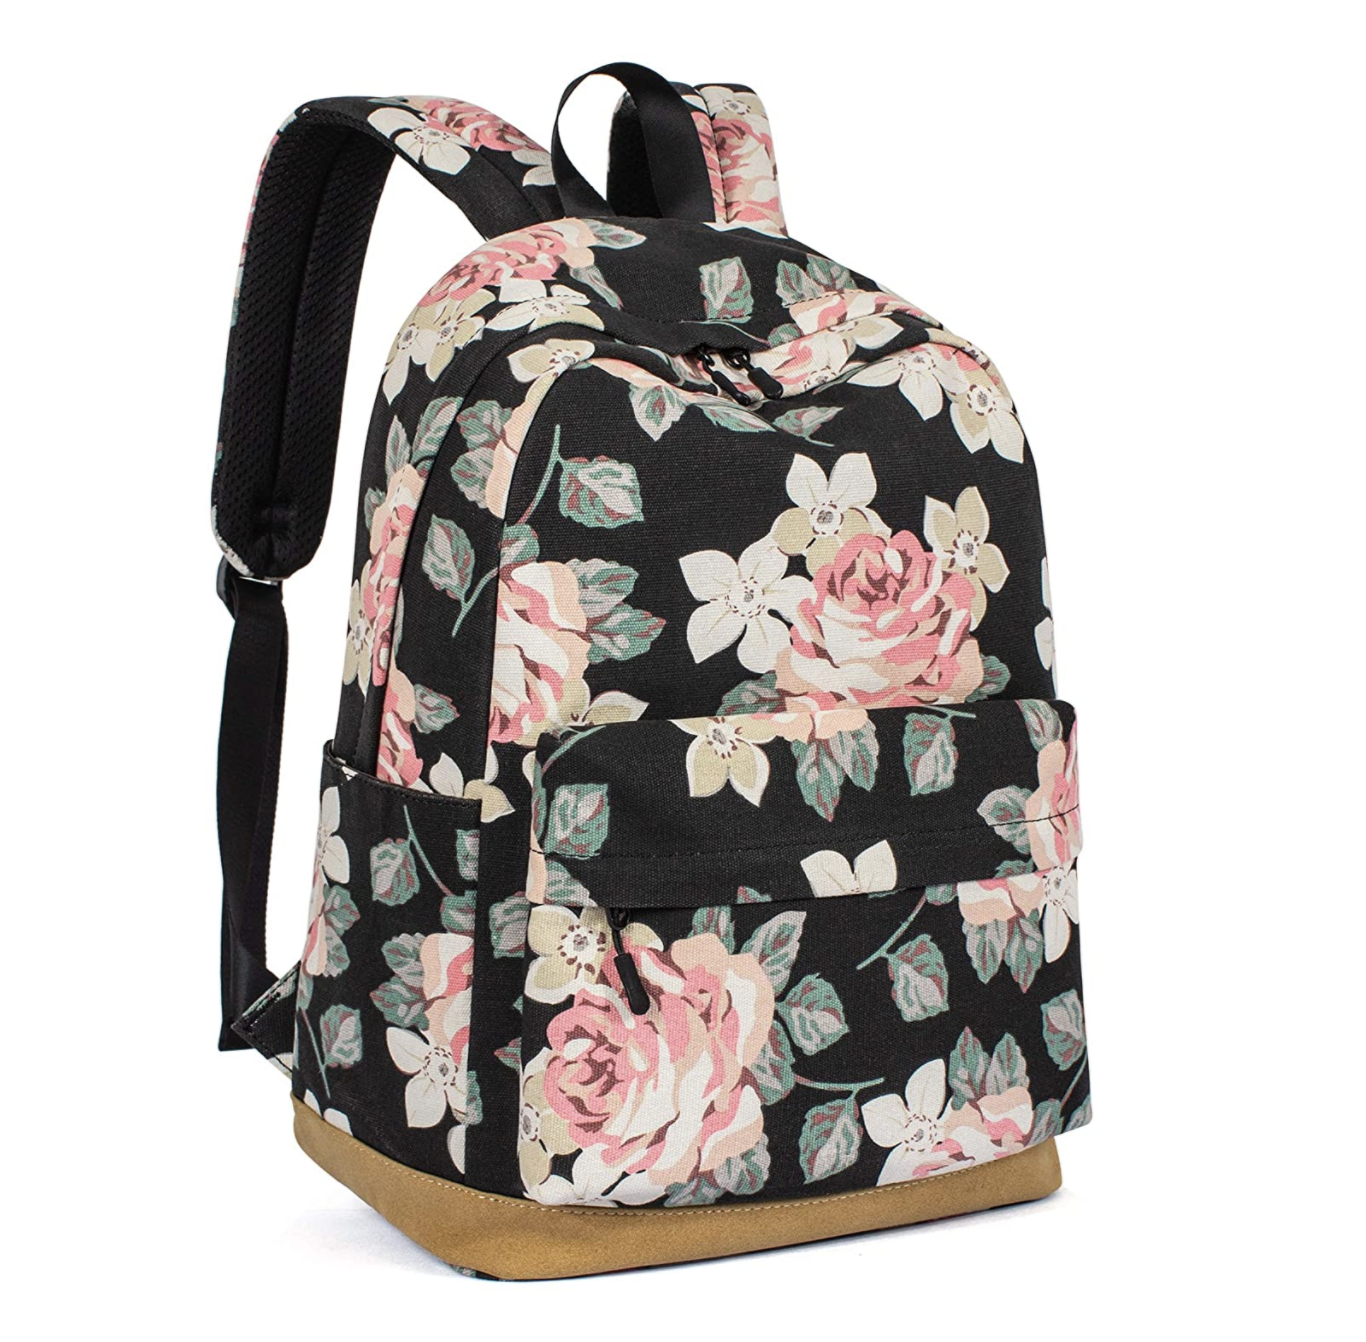 school bags for senior girls